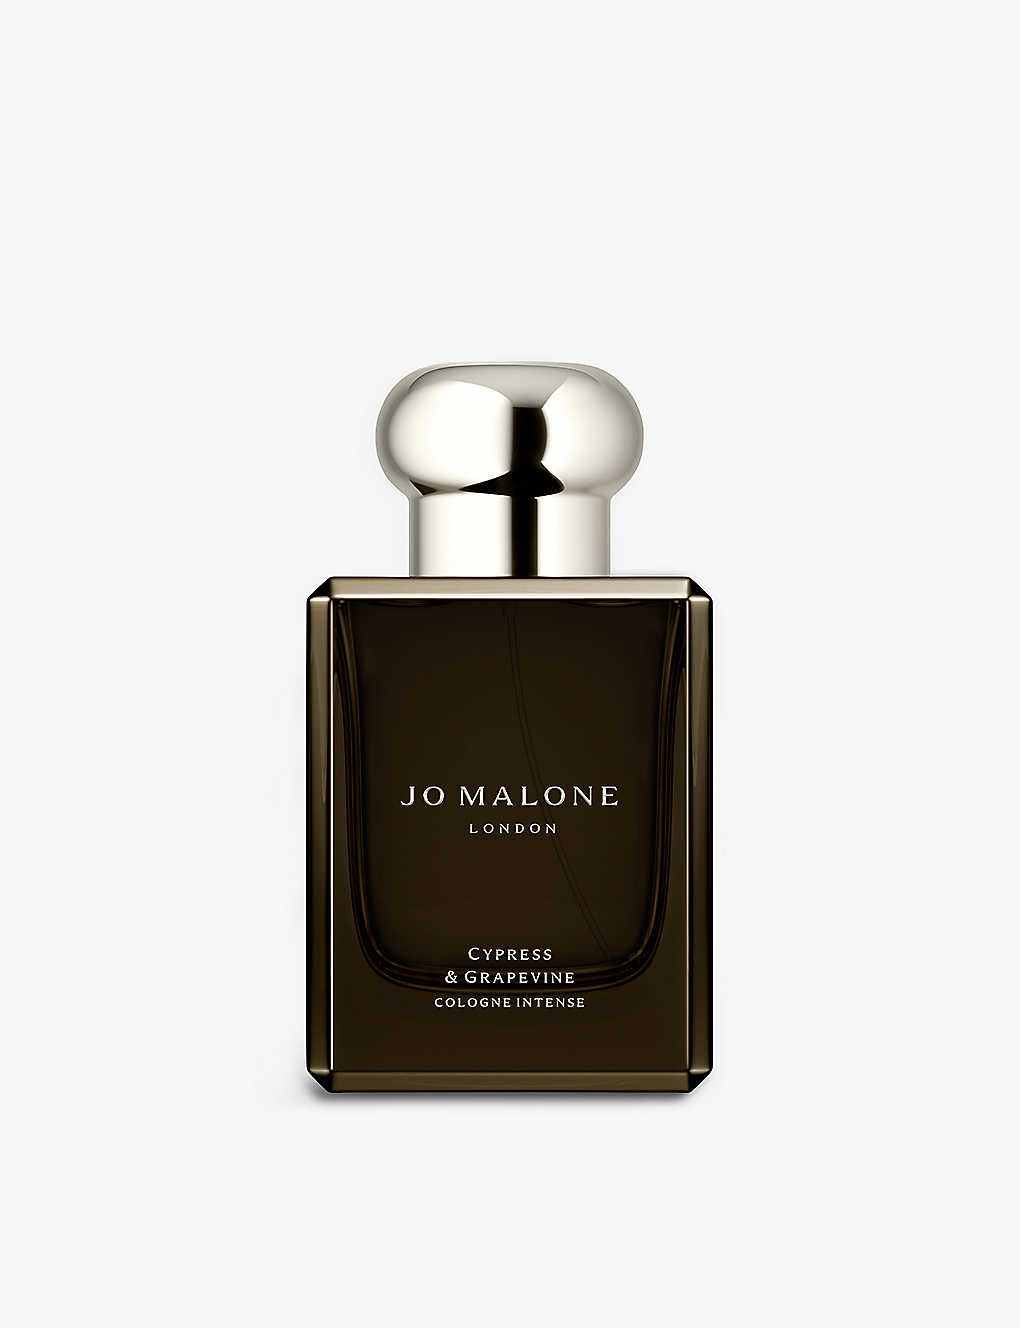 Jo Malone London Cypress & Grapevine Cologne Intense 50ml